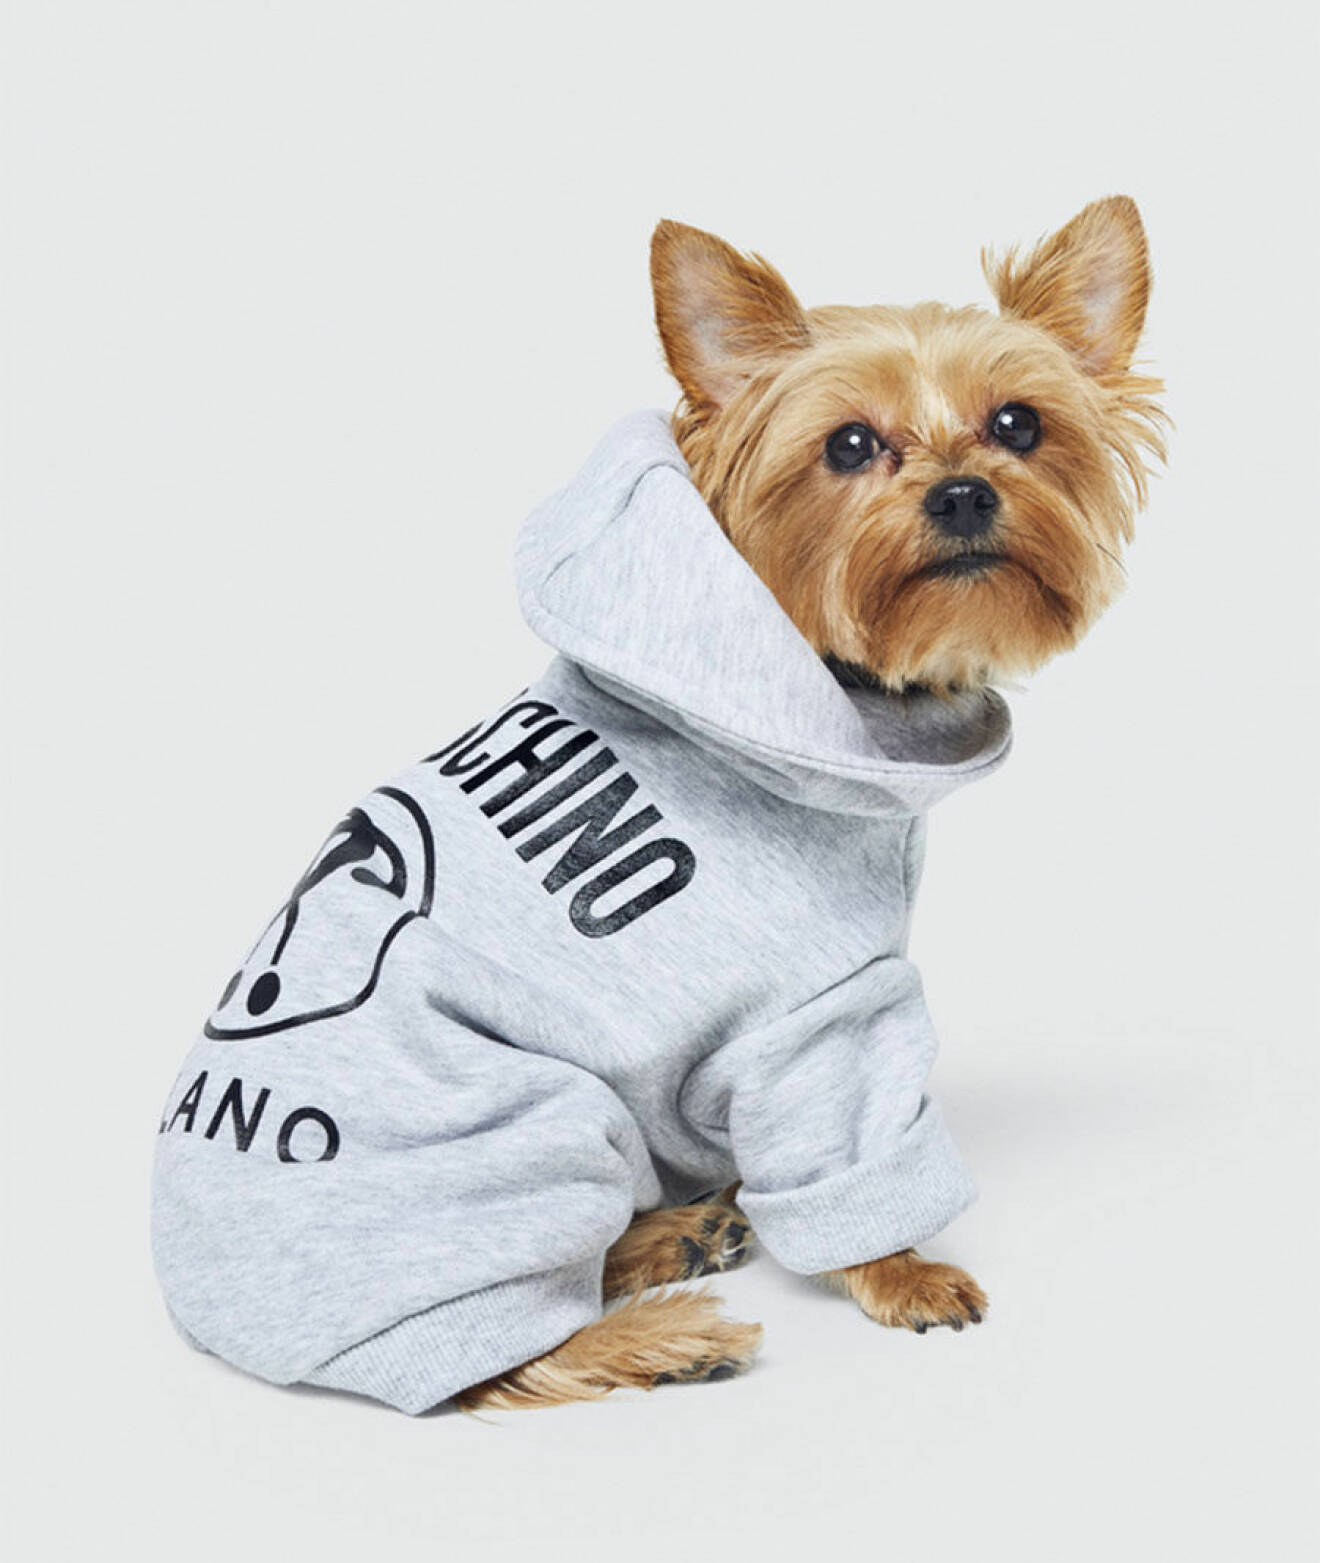 H&M och Moschino samarbetar kring en kollektion frö hundar